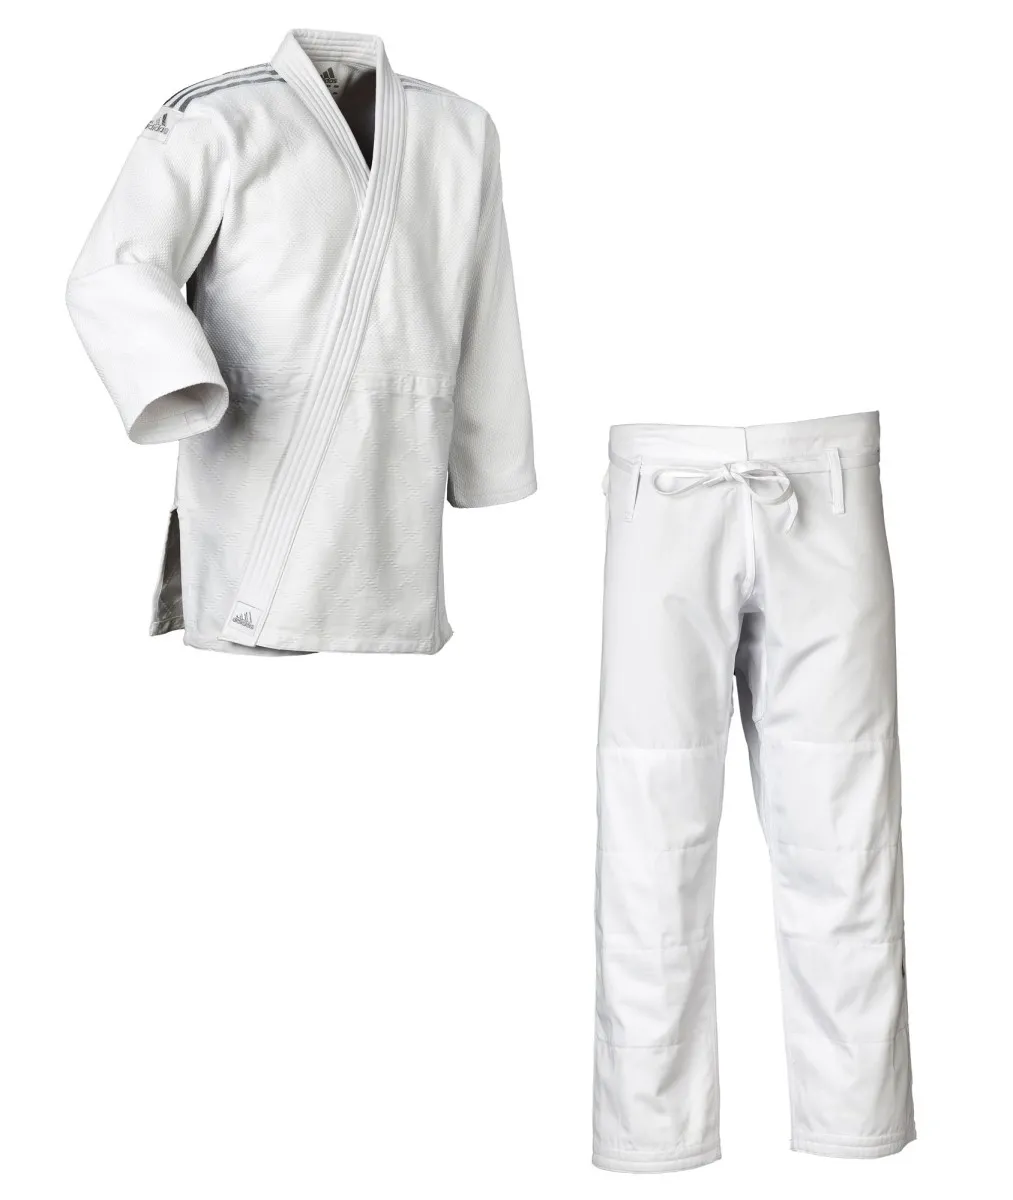 Traje adidas Judo Contest blanco delantero